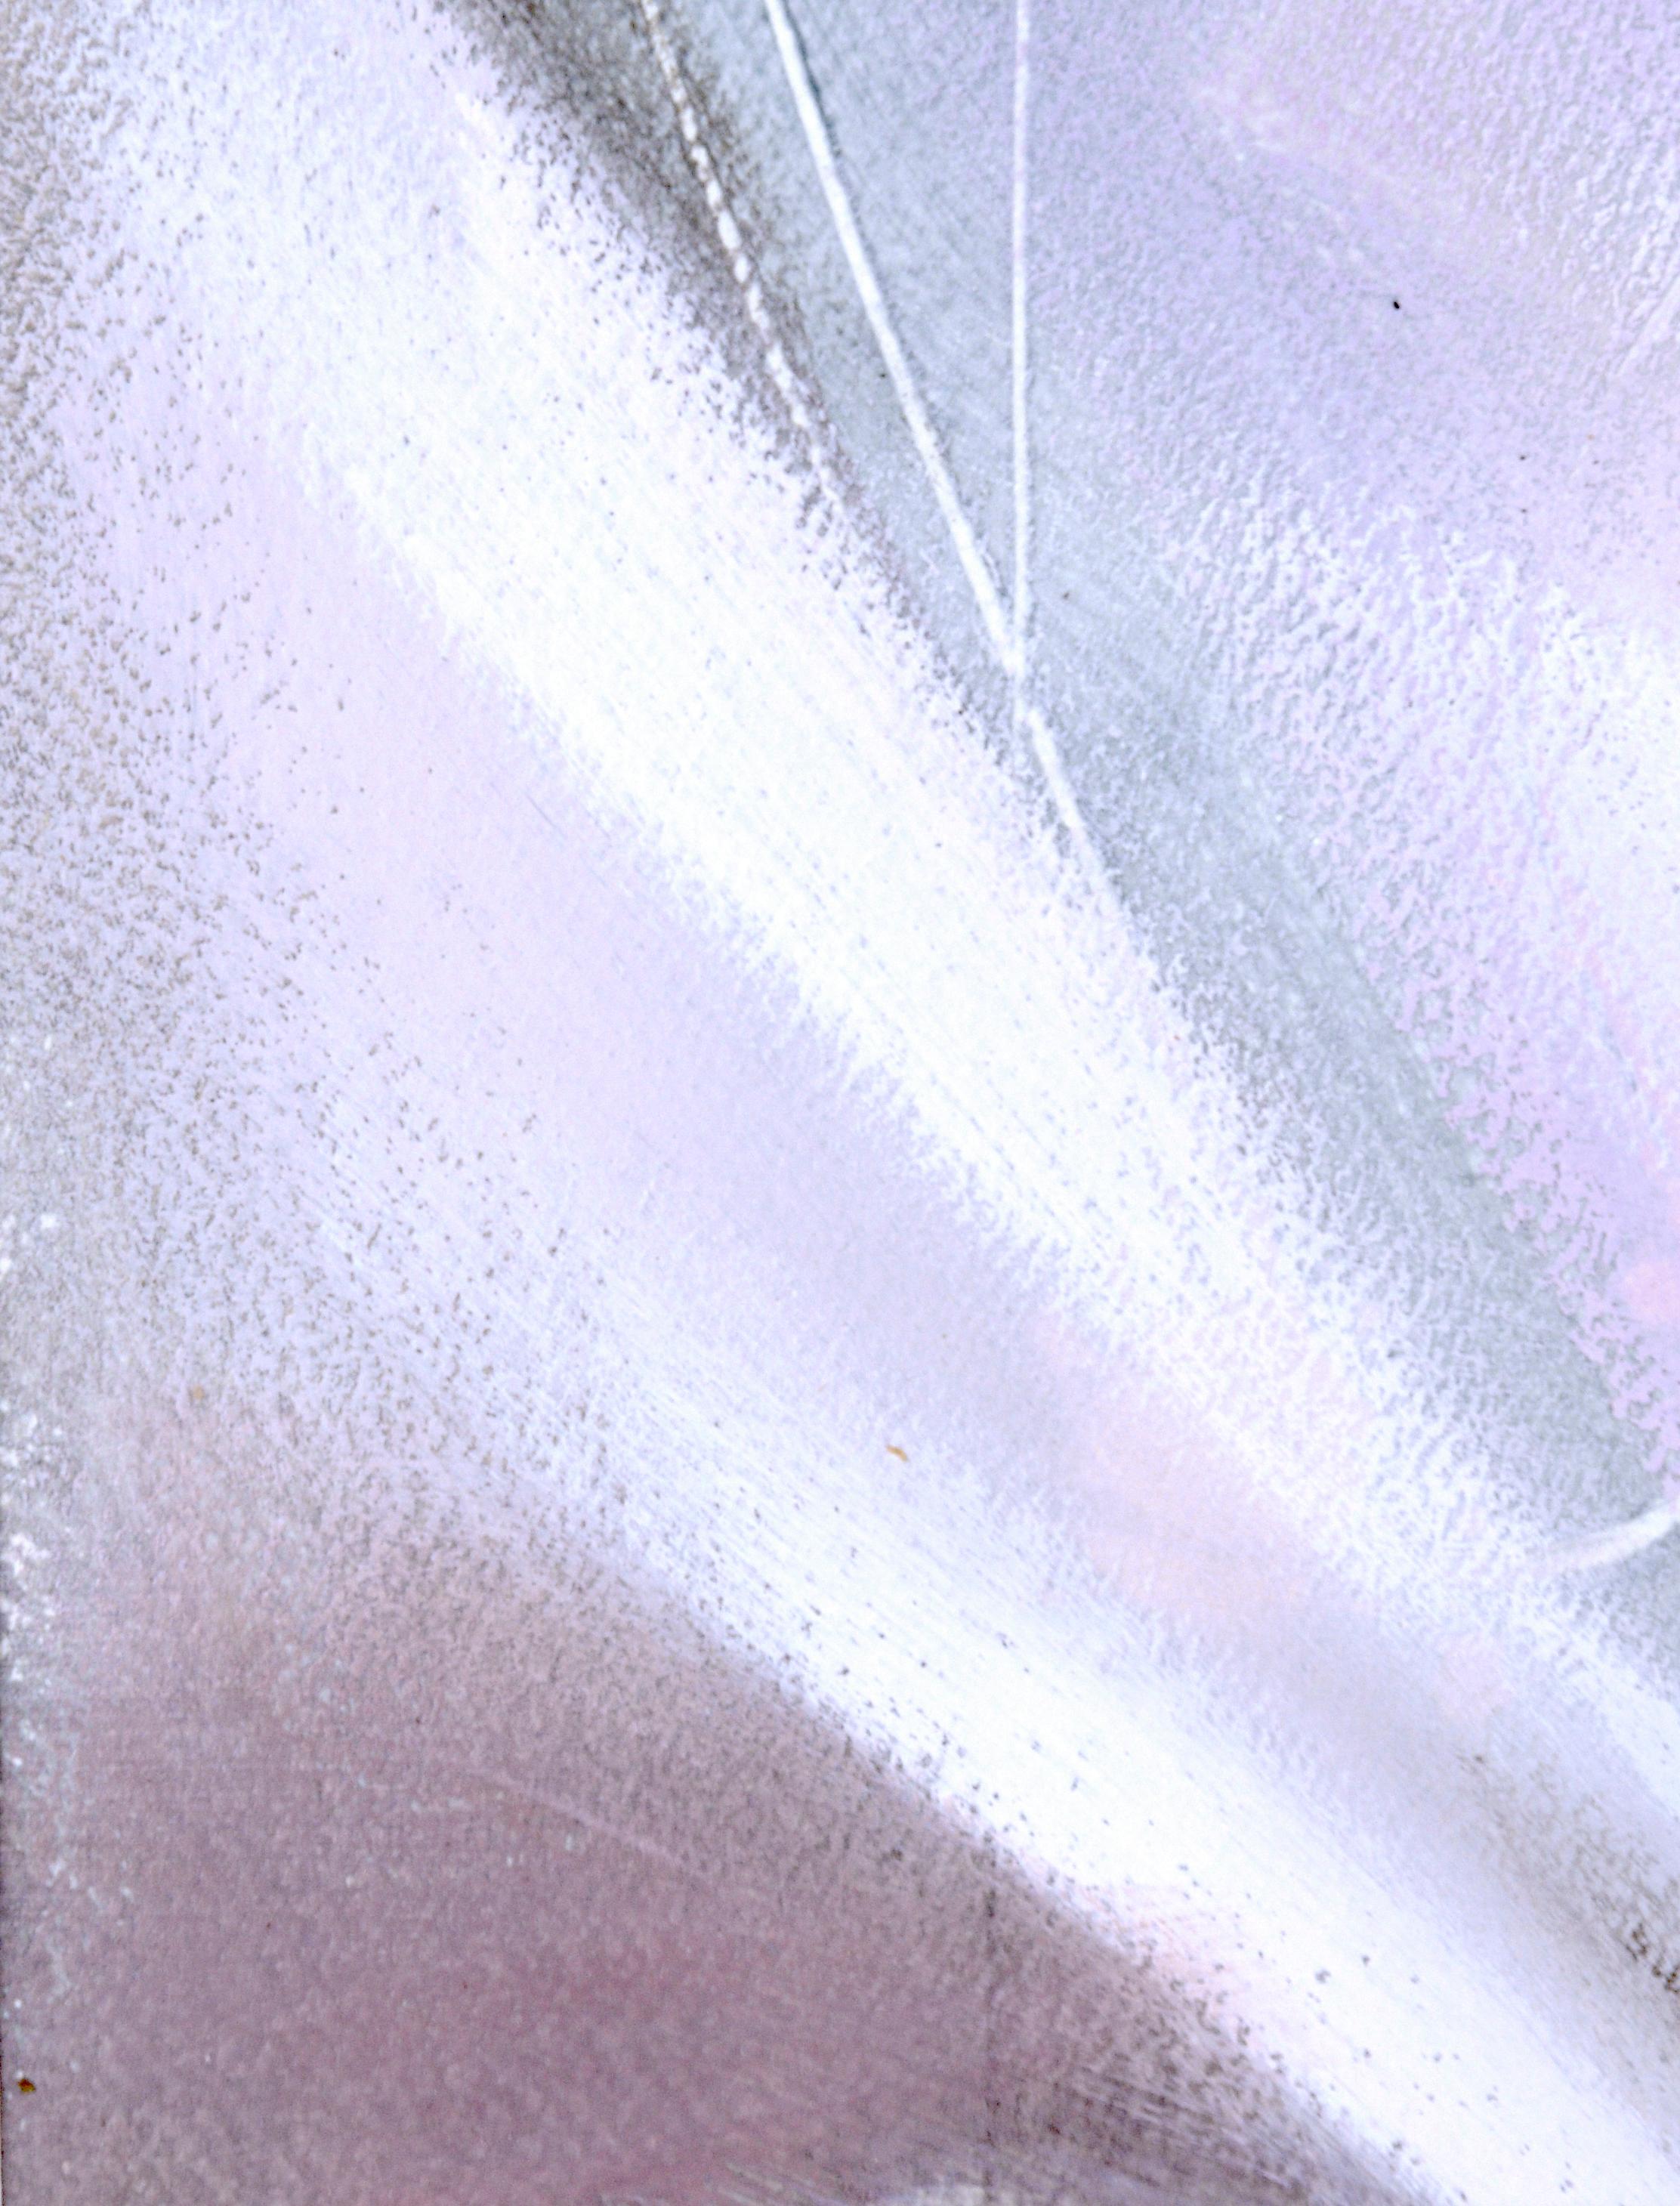 Toujours partie et toujours entière II - Acrylique abstraite sur papier

Des pastels doux créent cet abstrait éthéré, par l'artiste de Floride, Ronald Dennis Reams (américain, né en 1950). 

Taille du tapis : 16 